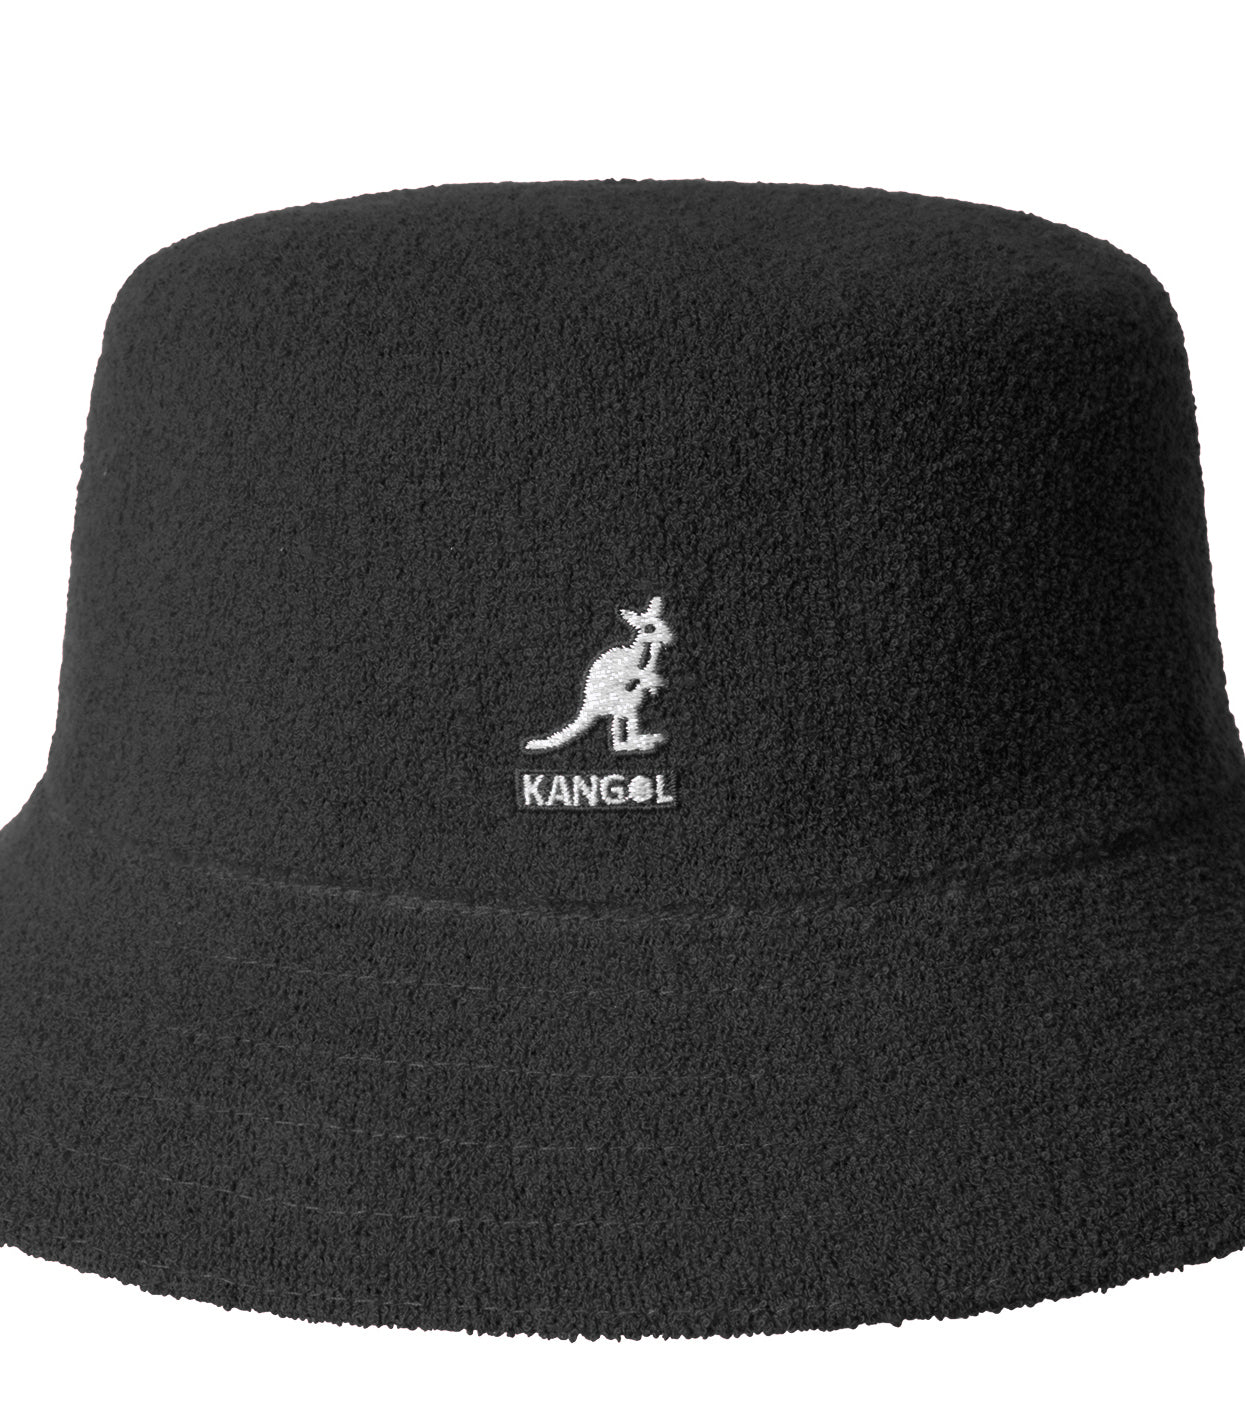 Kangol Bermuda Bucket Hat In Black Sponge